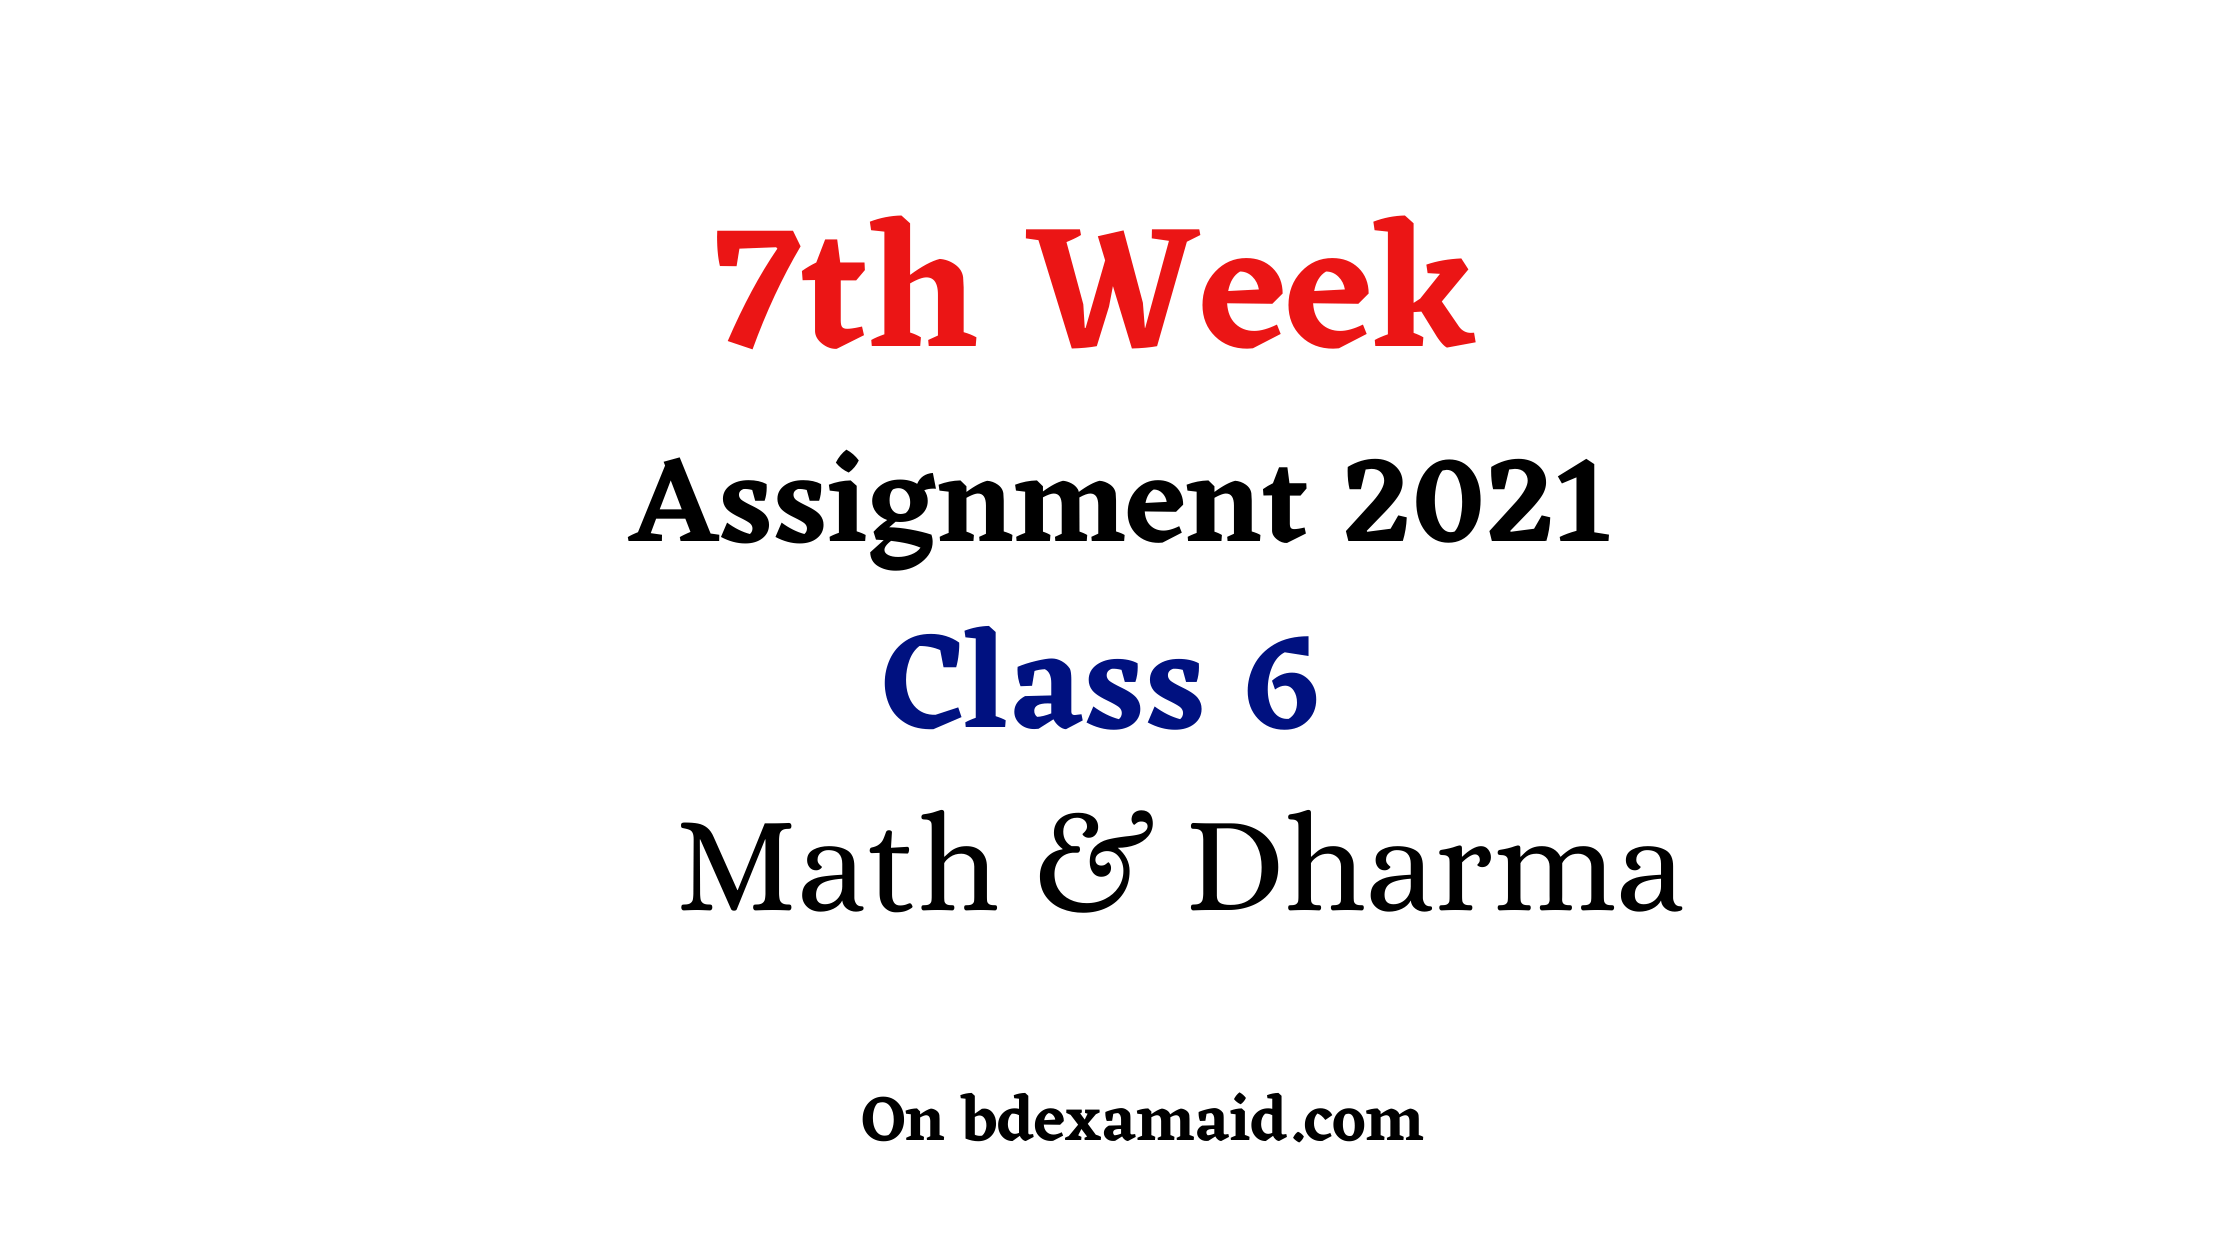 class 6 math assignment 7th week 2021